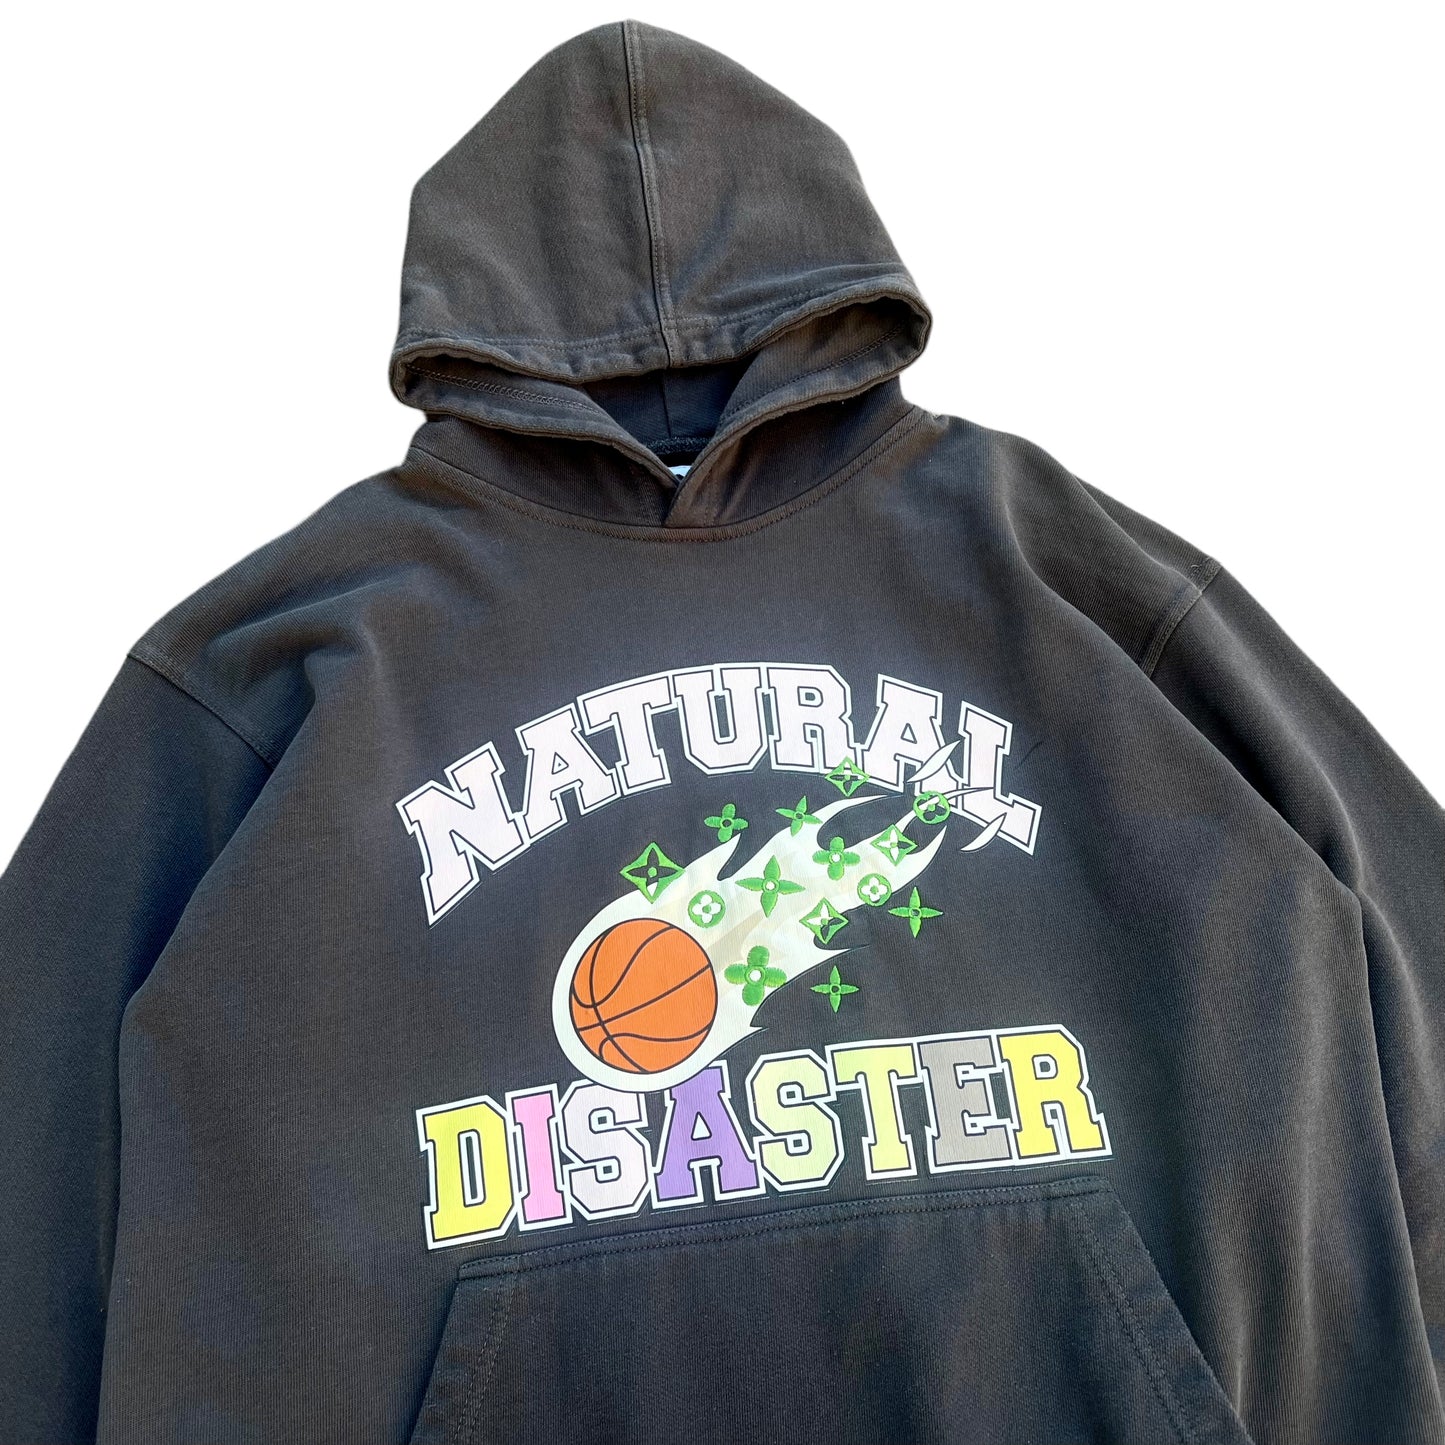 Black Natural Disaster Hoodie